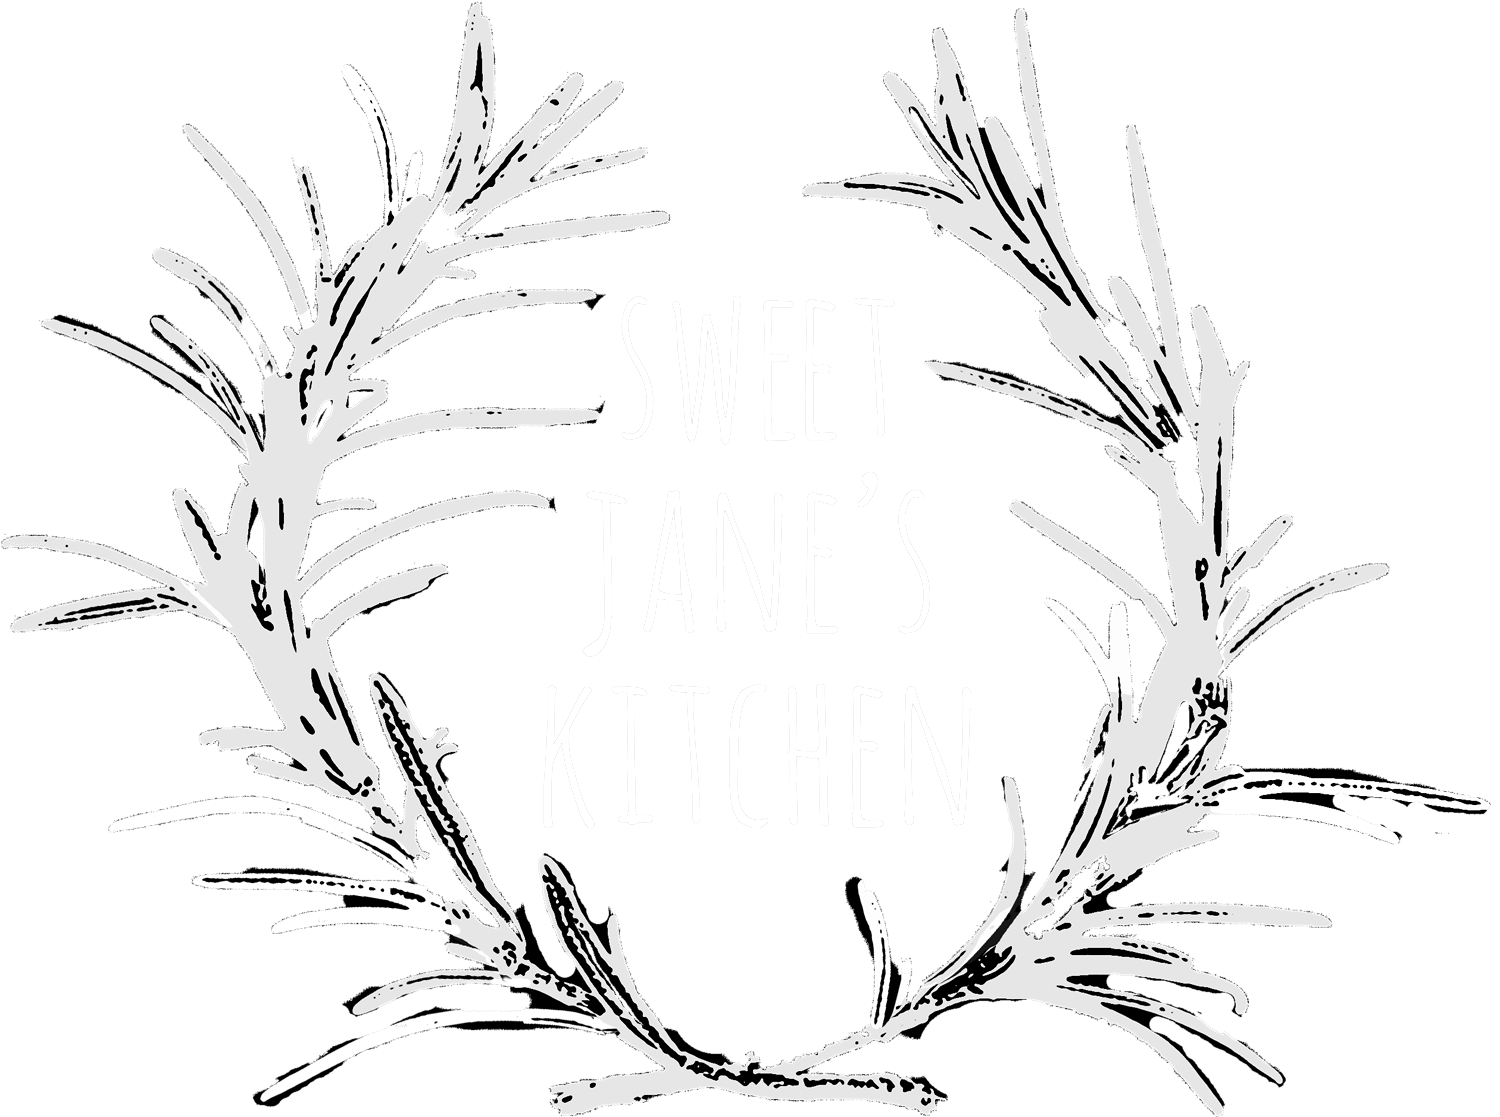 Sweet Jane's Kitchen